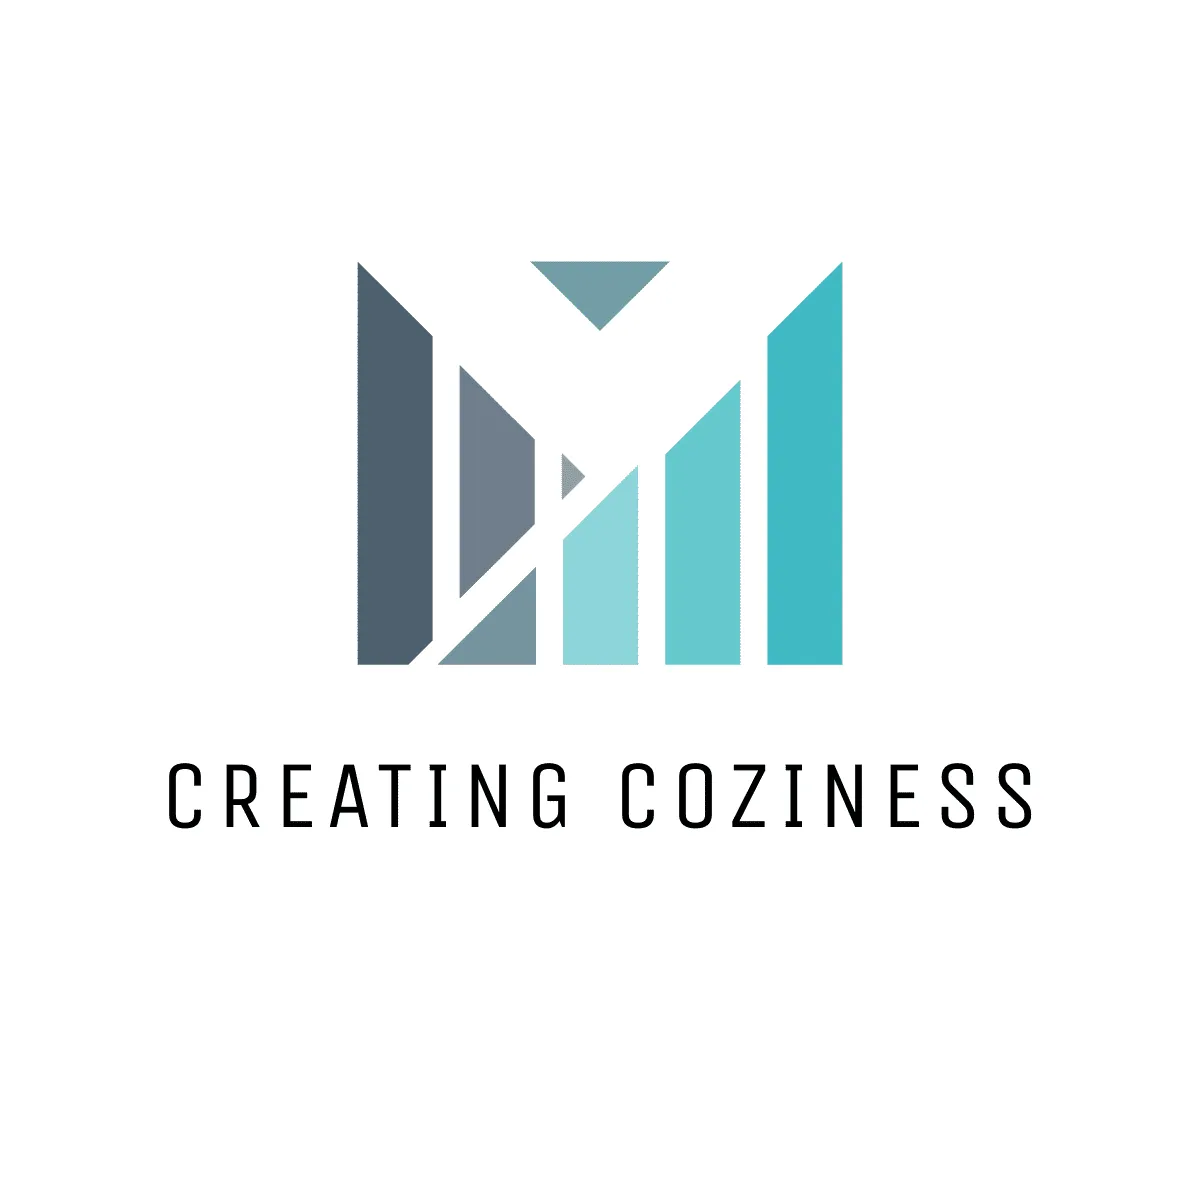 Creating Coziness